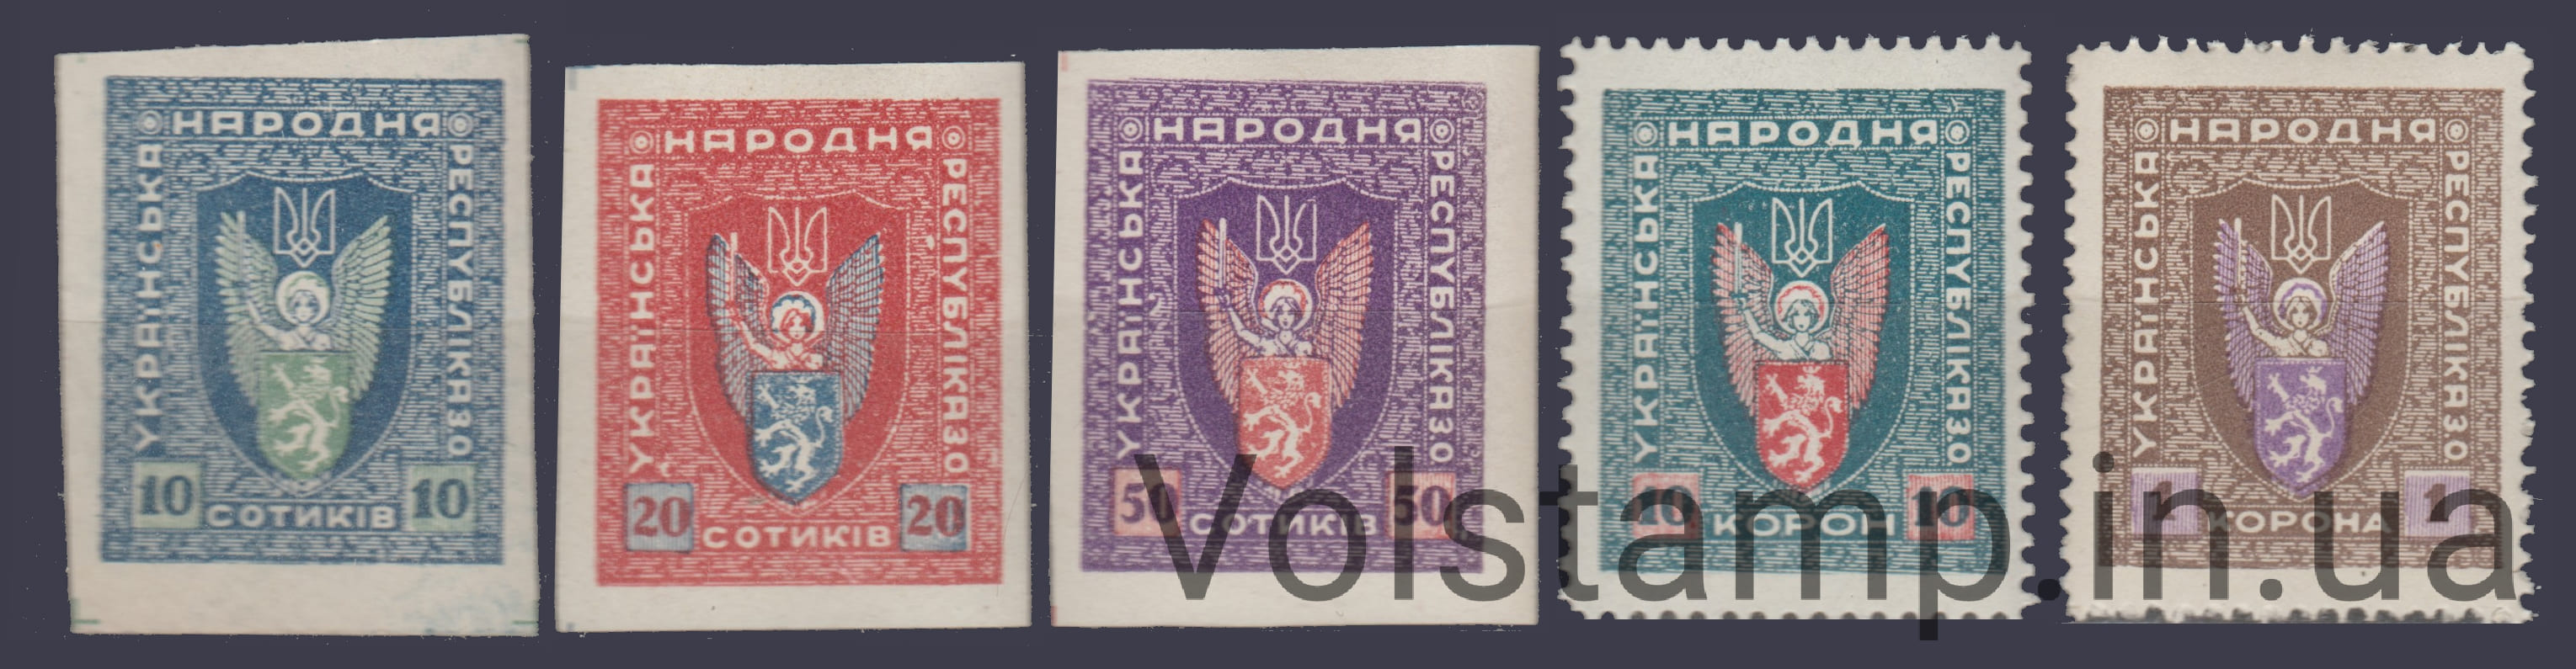 1919 Серія марок УНР Західна область - Українська Народна Республіка MNH